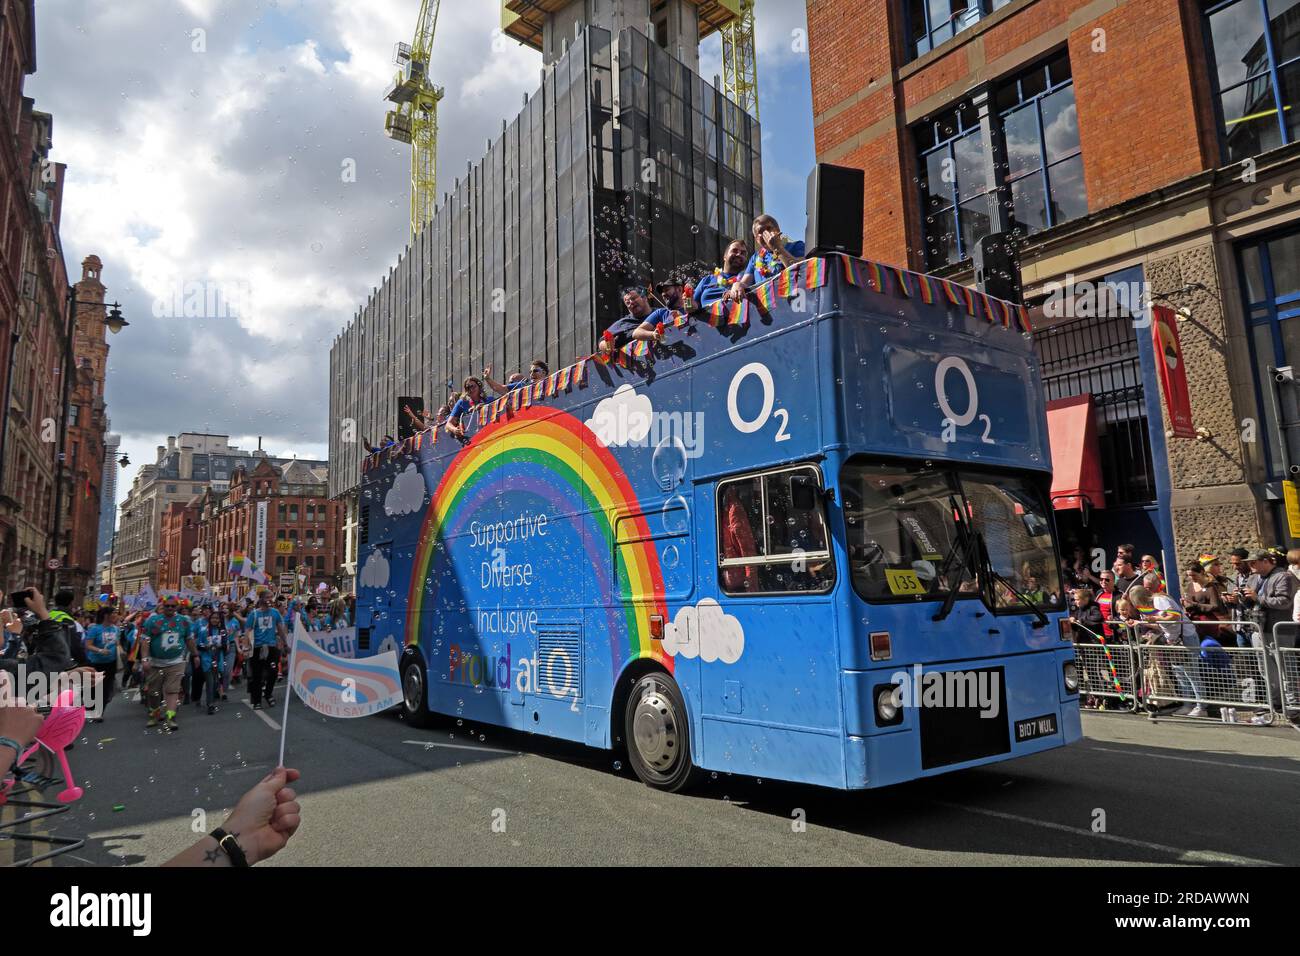 O2 di supporto, diversificato, incluso al Manchester Pride Festival Parade, 36 Whitworth Street, Manchester, Inghilterra, Regno Unito, M1 3NR Foto Stock